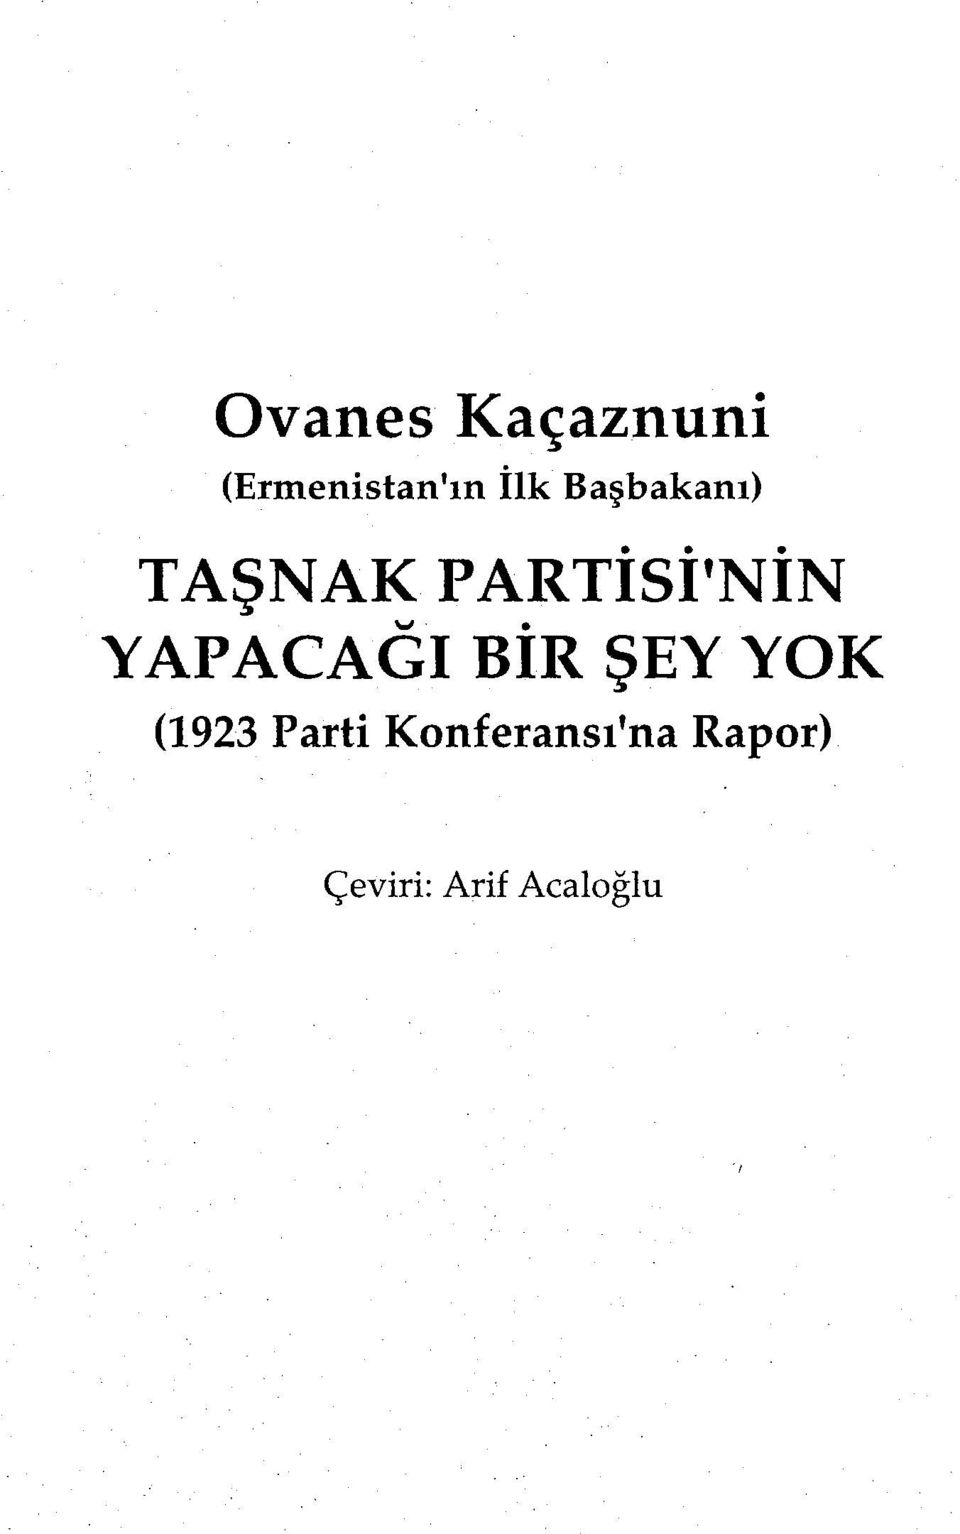 YAPACAGI BIR ŞEY YOK (1923 Parti